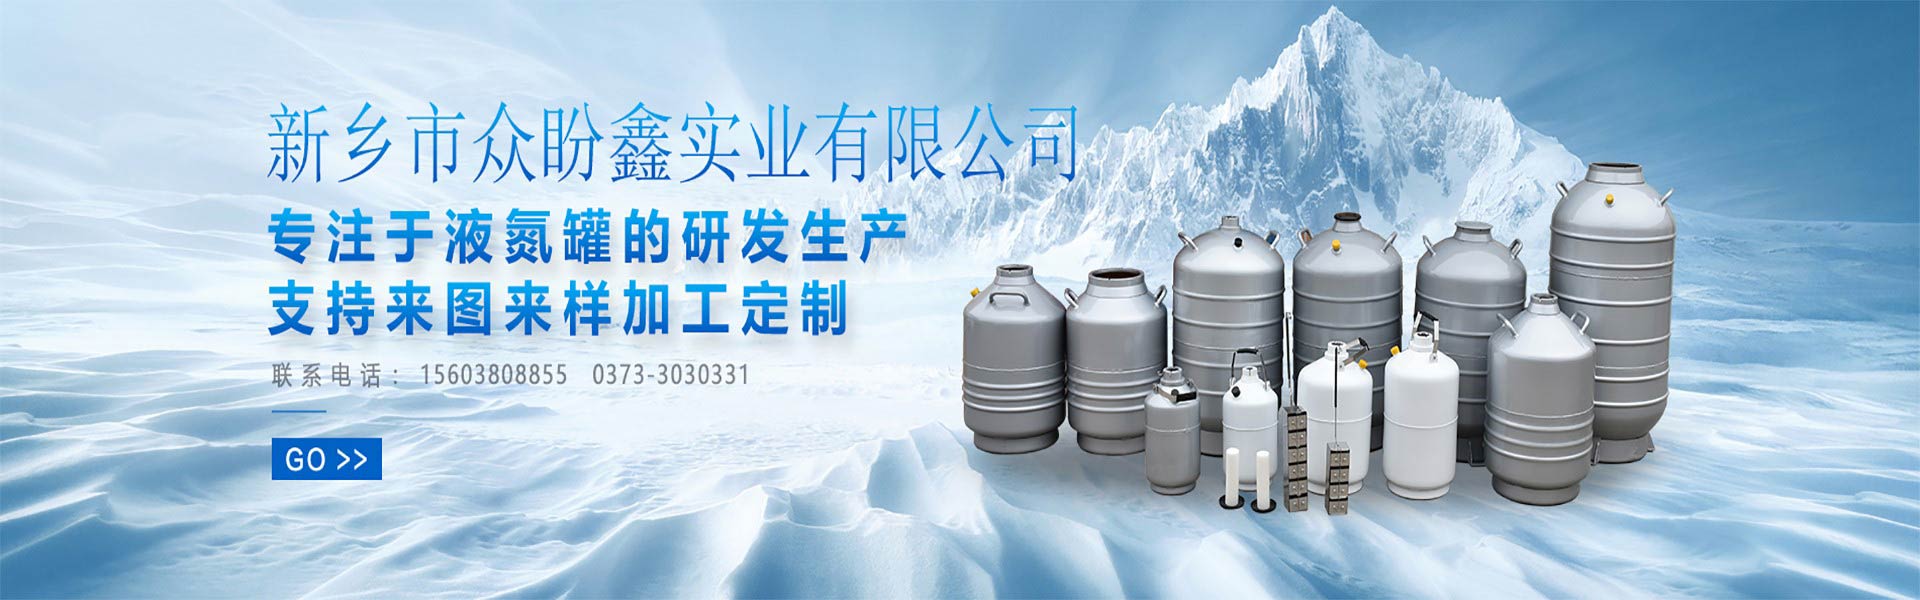 液氮罐制造商-众盼鑫液氮罐